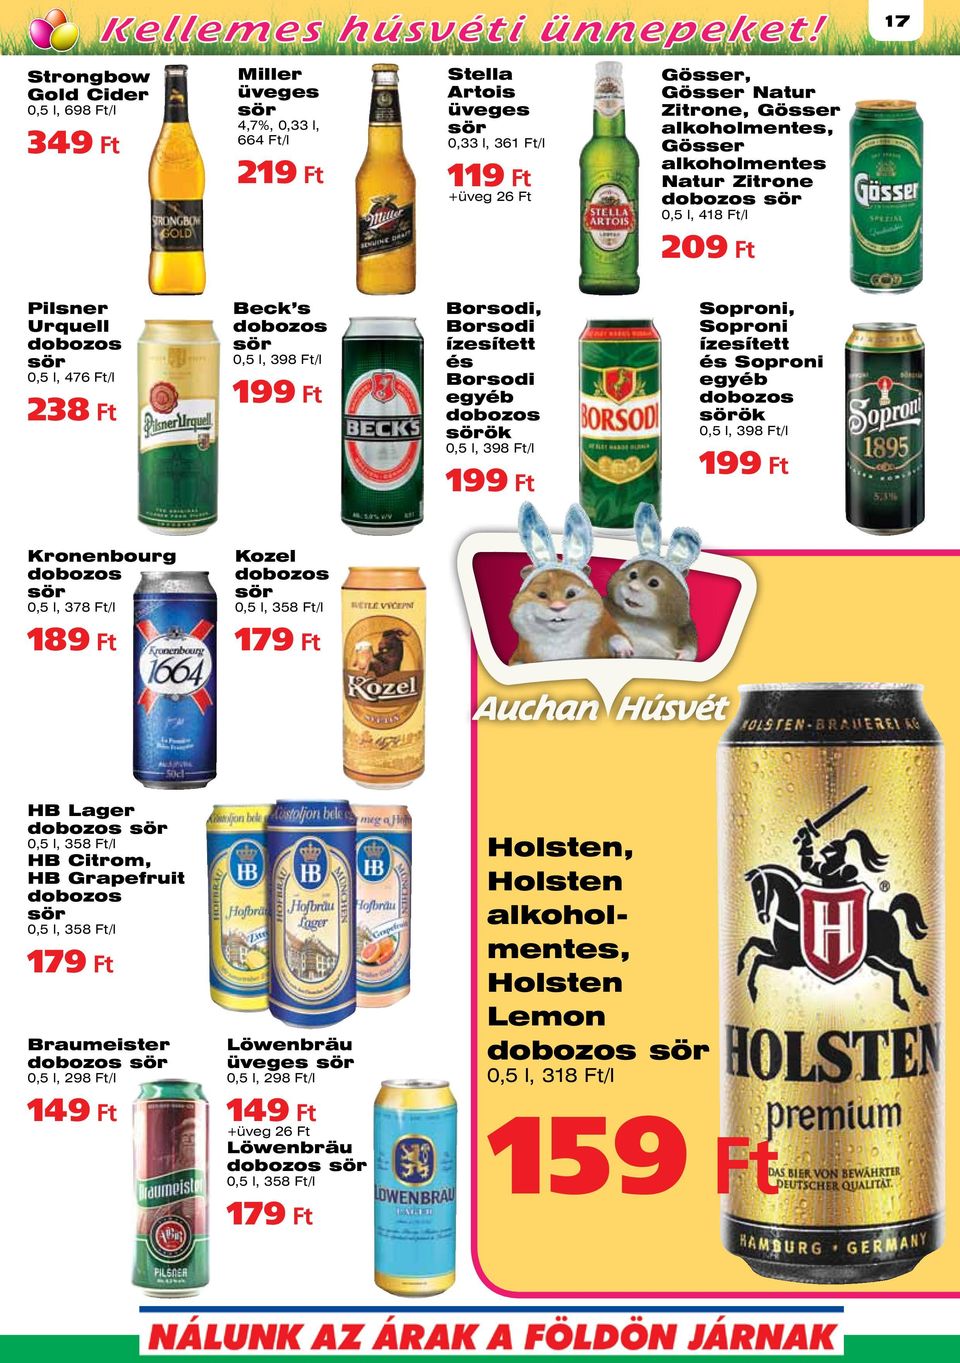 ízesített és Borsodi egyéb dobozos sörök 0,5 l, 398 Ft/l 199 Ft Soproni, Soproni ízesített és Soproni egyéb dobozos sörök 0,5 l, 398 Ft/l 199 Ft Kronenbourg dobozos sör 0,5 l, 378 Ft/l 189 Ft Kozel